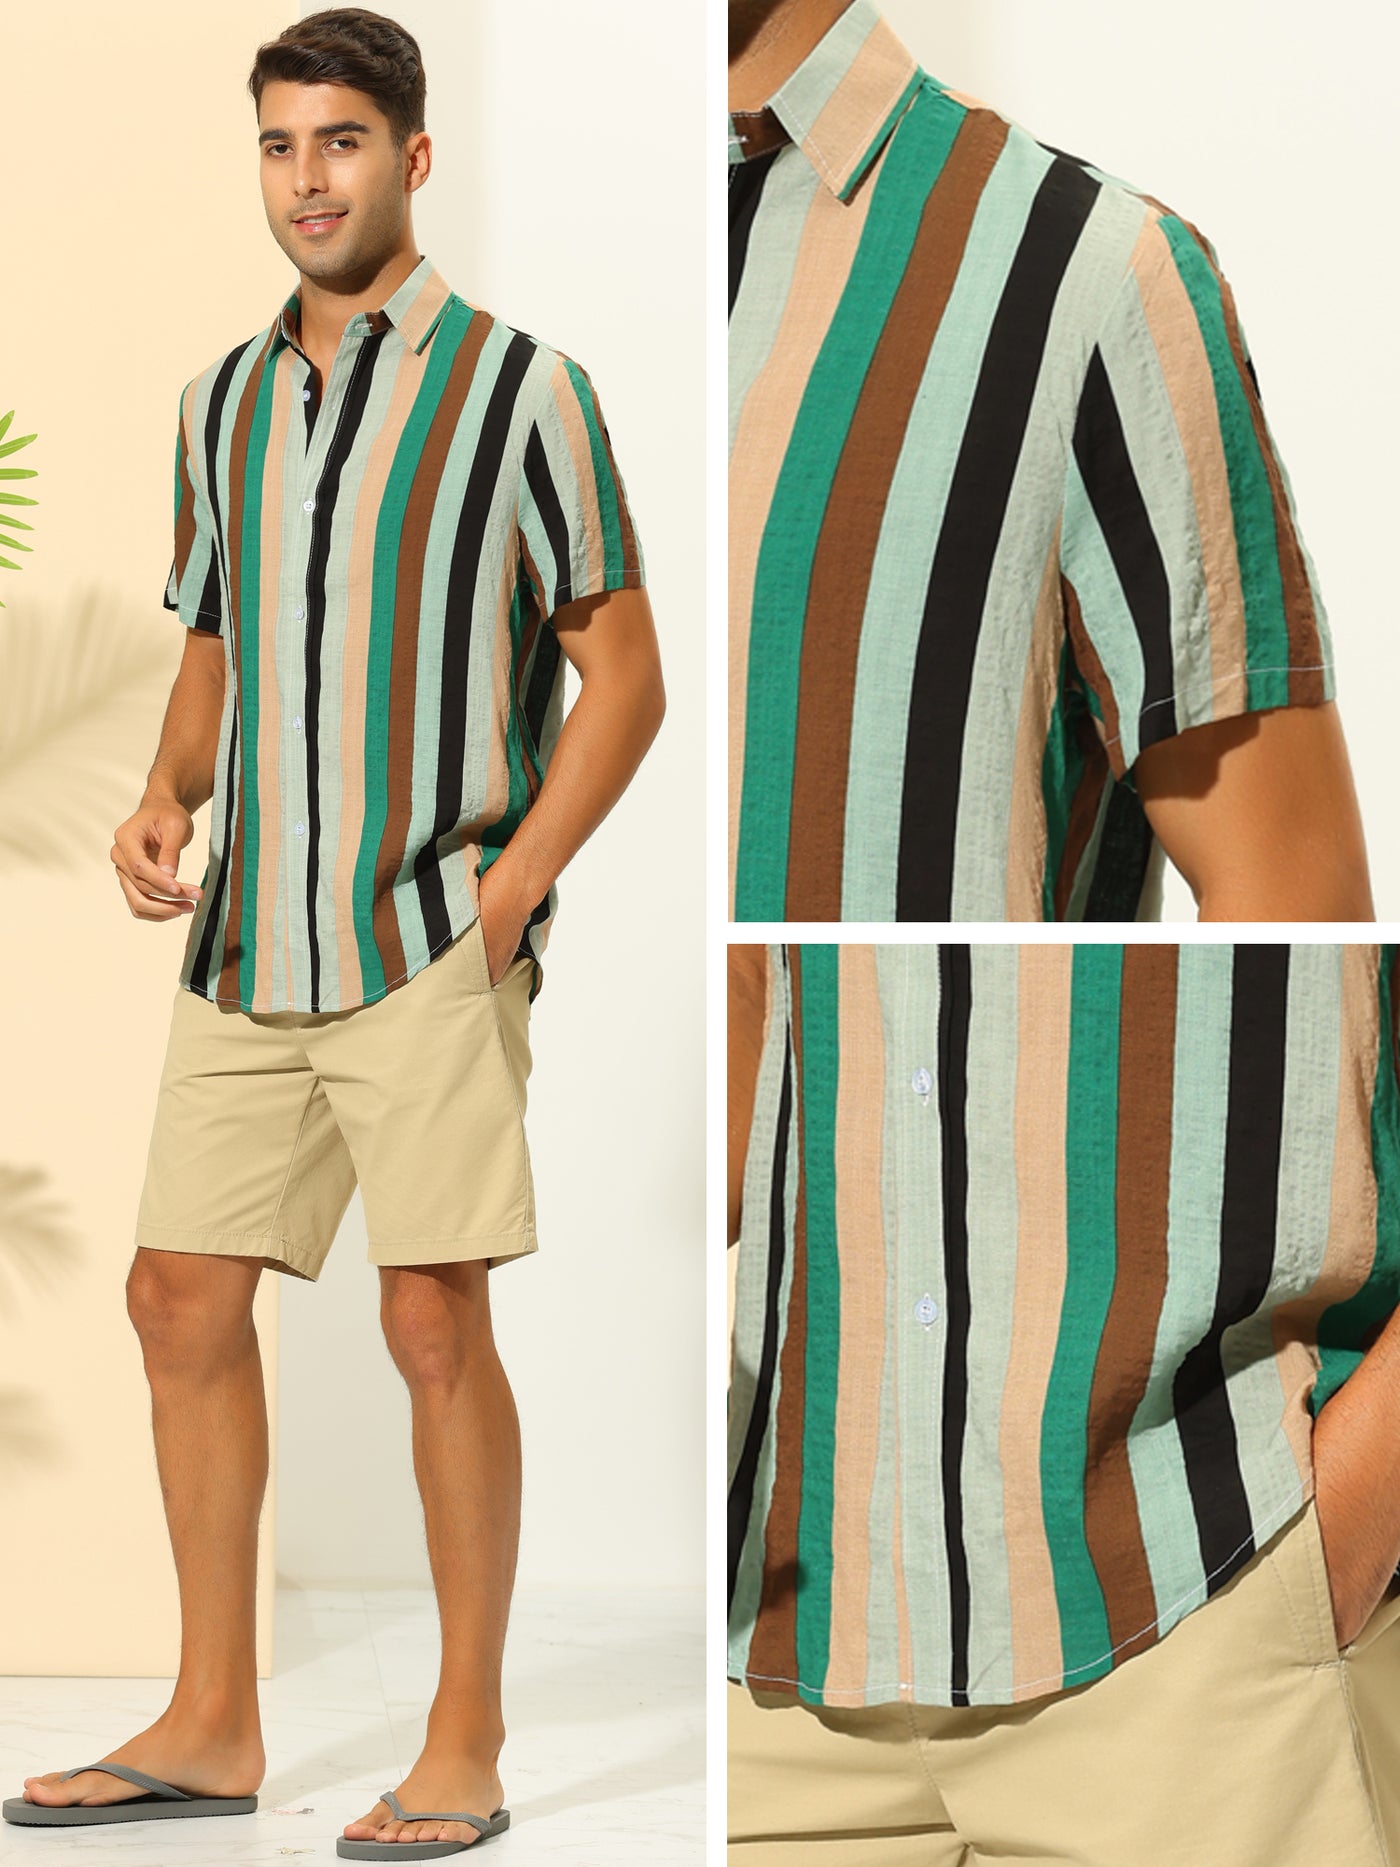 Bublédon Vertical Striped Shirts for Men's Summer Hawaiian Short Sleeves Button Down Shirt